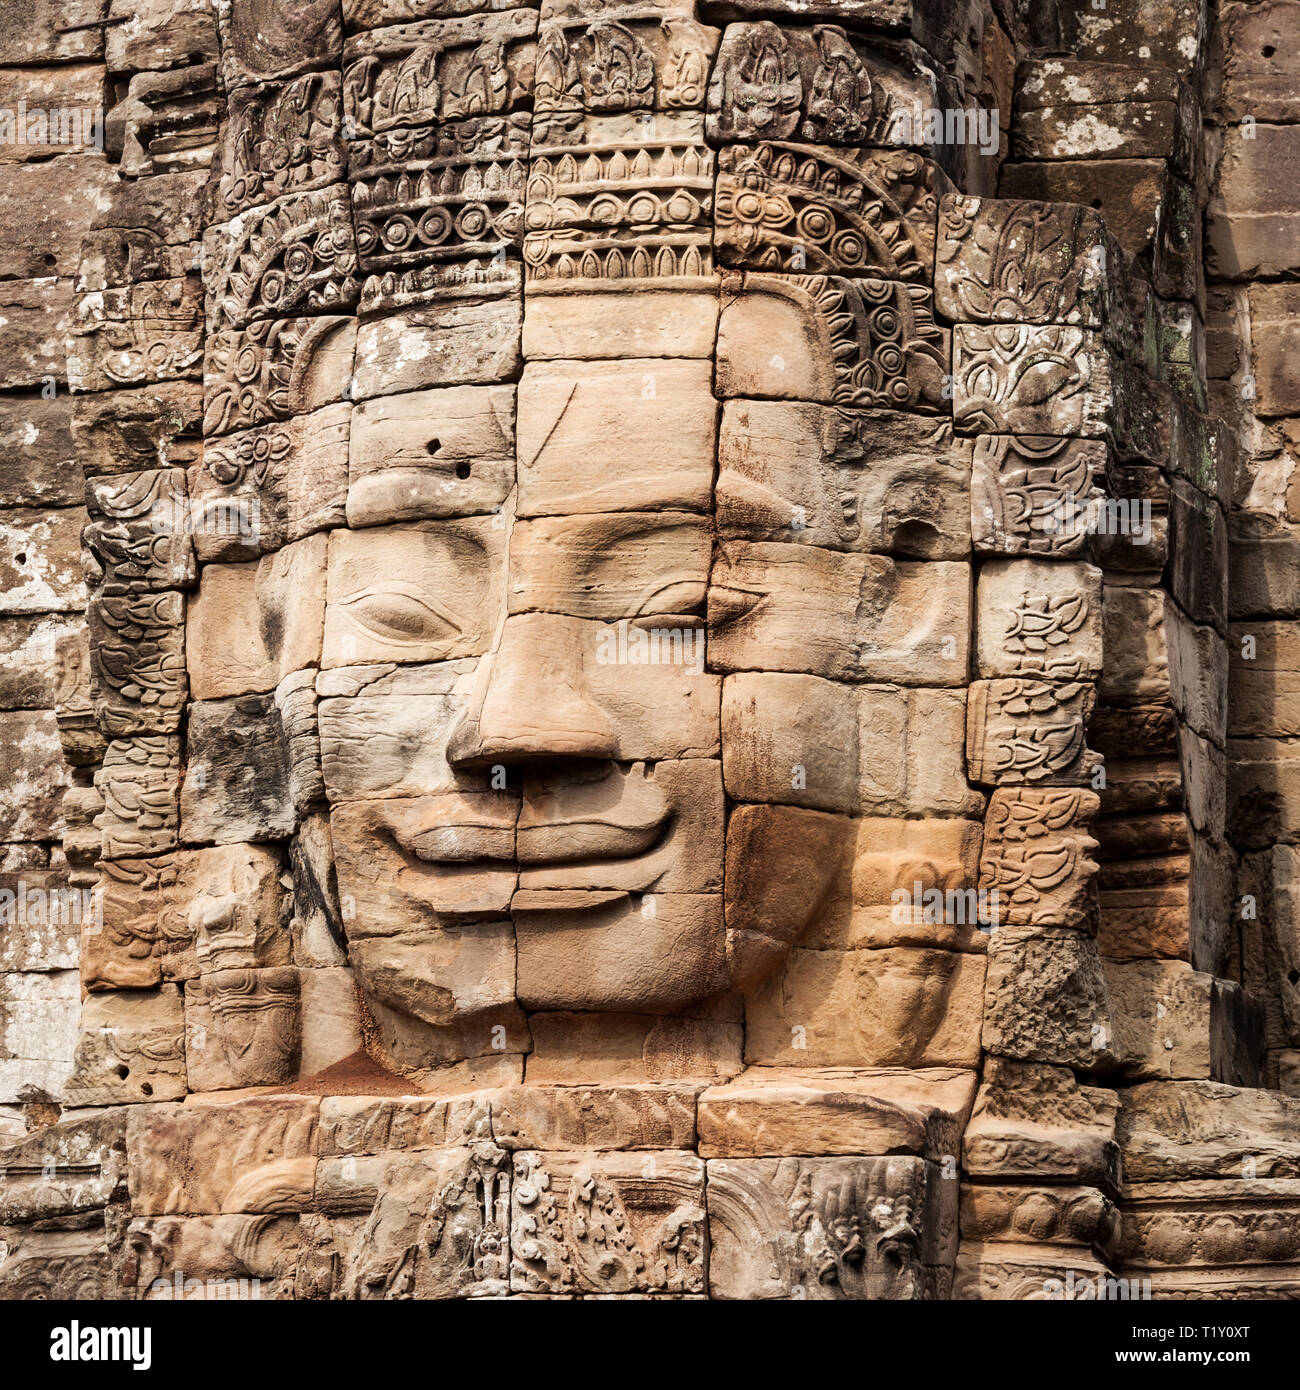 Visages de pierre au temple Bayon. Bayon est un célèbre temple Khmer à Angkor au Cambodge. Banque D'Images